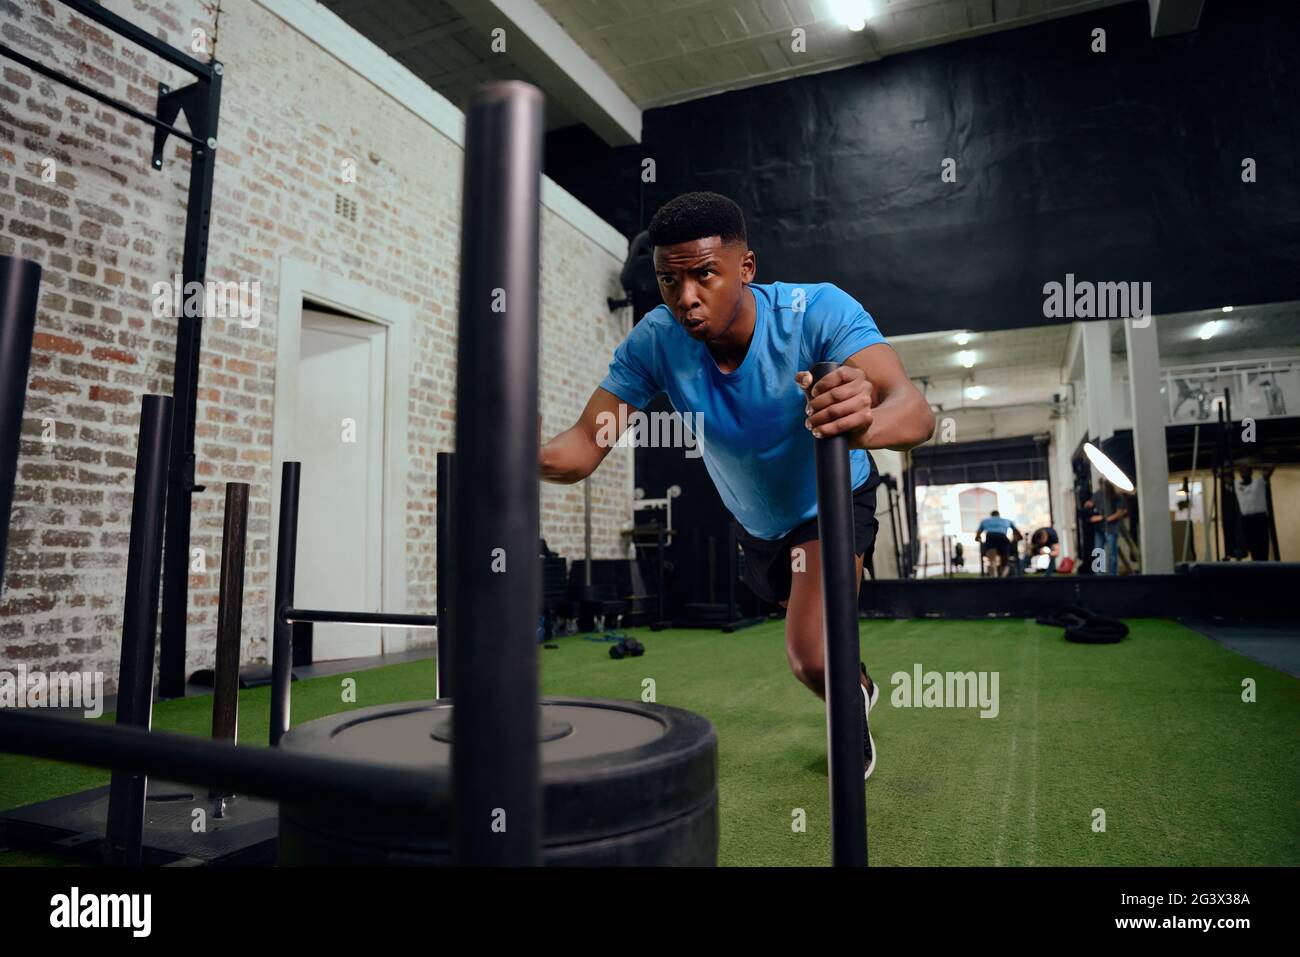 Afro-américain qui s'entraîne intensément lors d'une formation croisée. Athlète masculin poussant le traîneau dans la salle de gym. Photo de haute qualité Banque D'Images